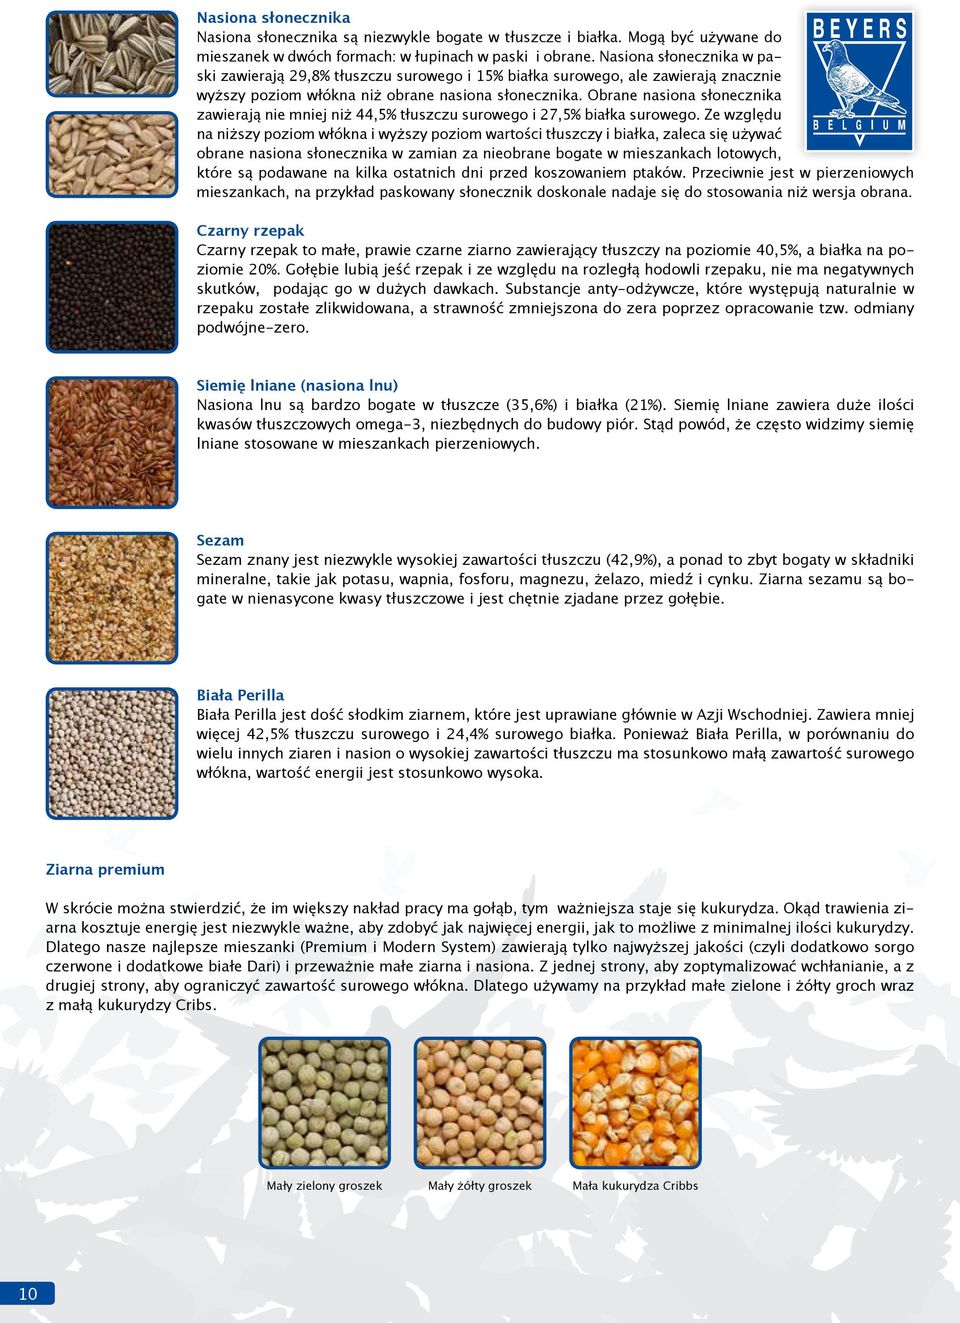 Obrane nasiona słonecznika zawierają nie mniej niż 44,5 tłuszczu surowego i 27,5 białka surowego.